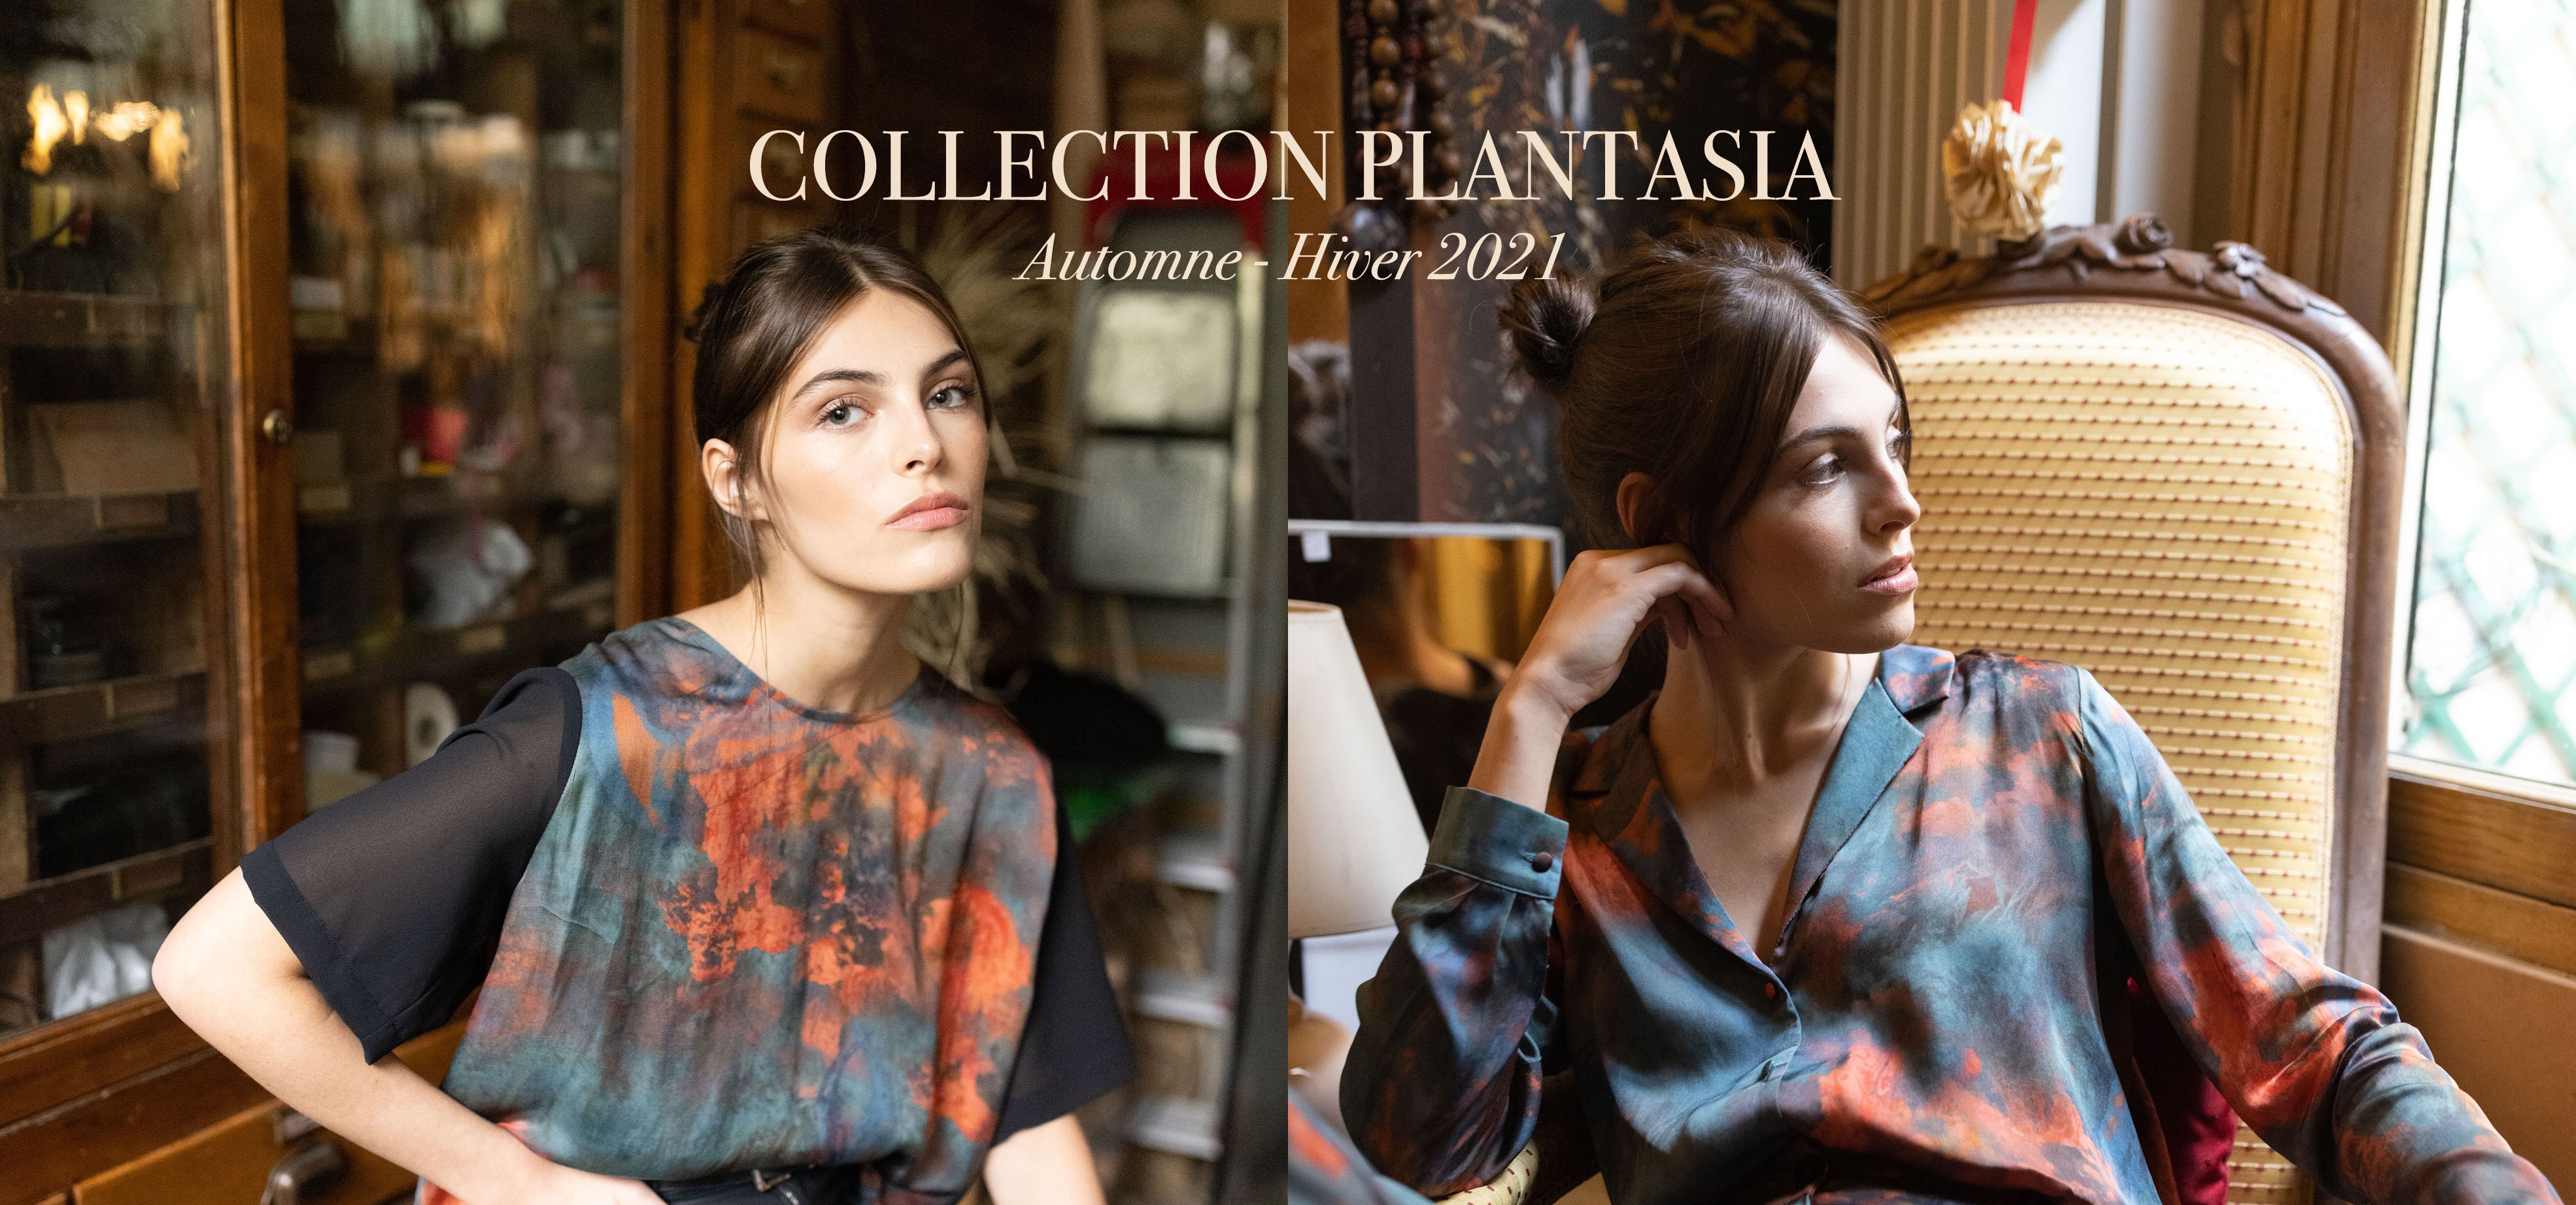 Collection Plantasia